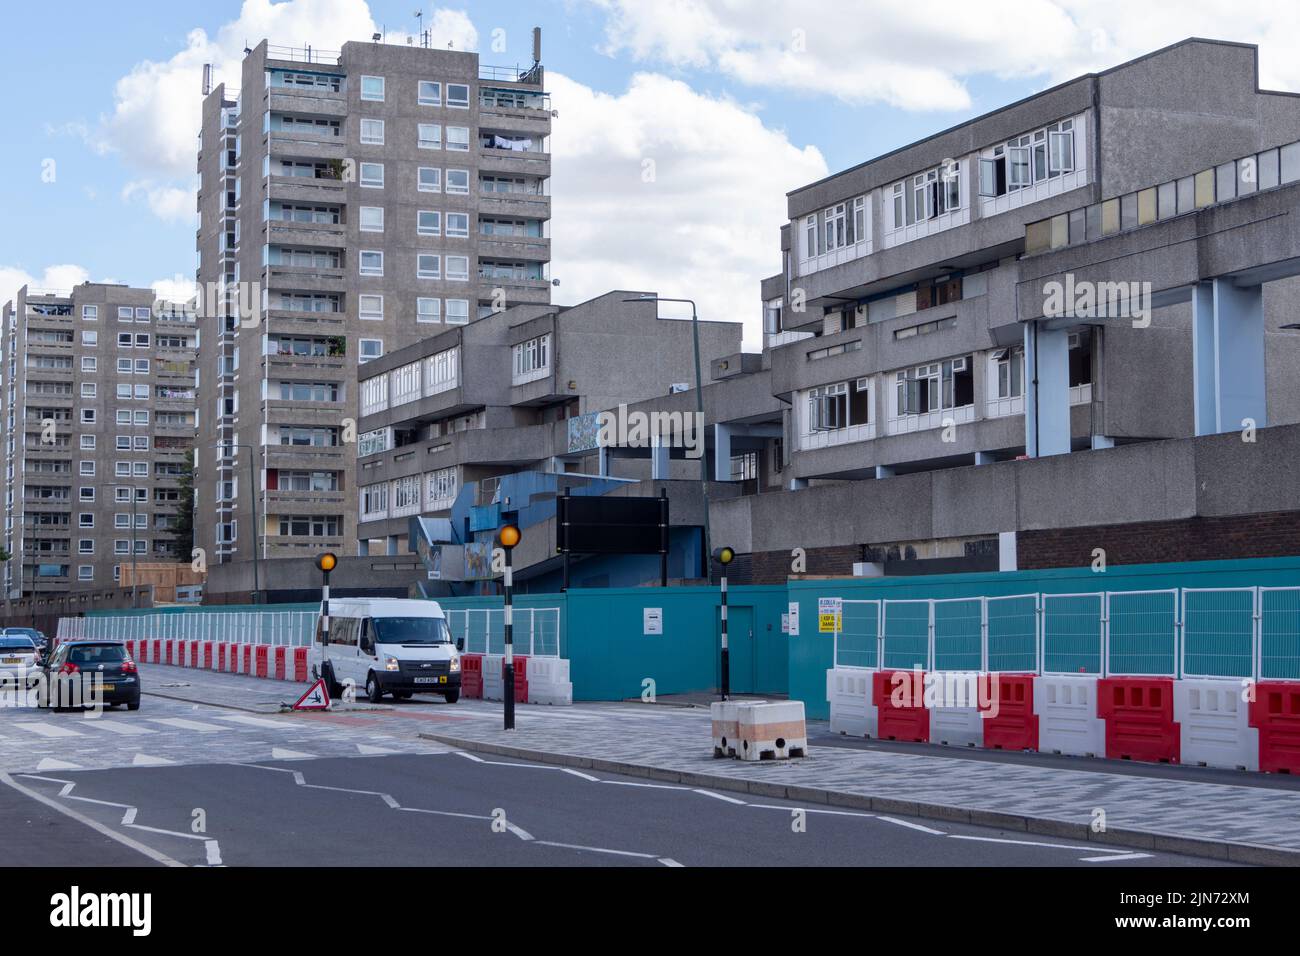 La vivienda social de Thamesmead en el sudeste de Londres está actualmente en remodelación. Inglaterra, Reino Unido. Foto de stock